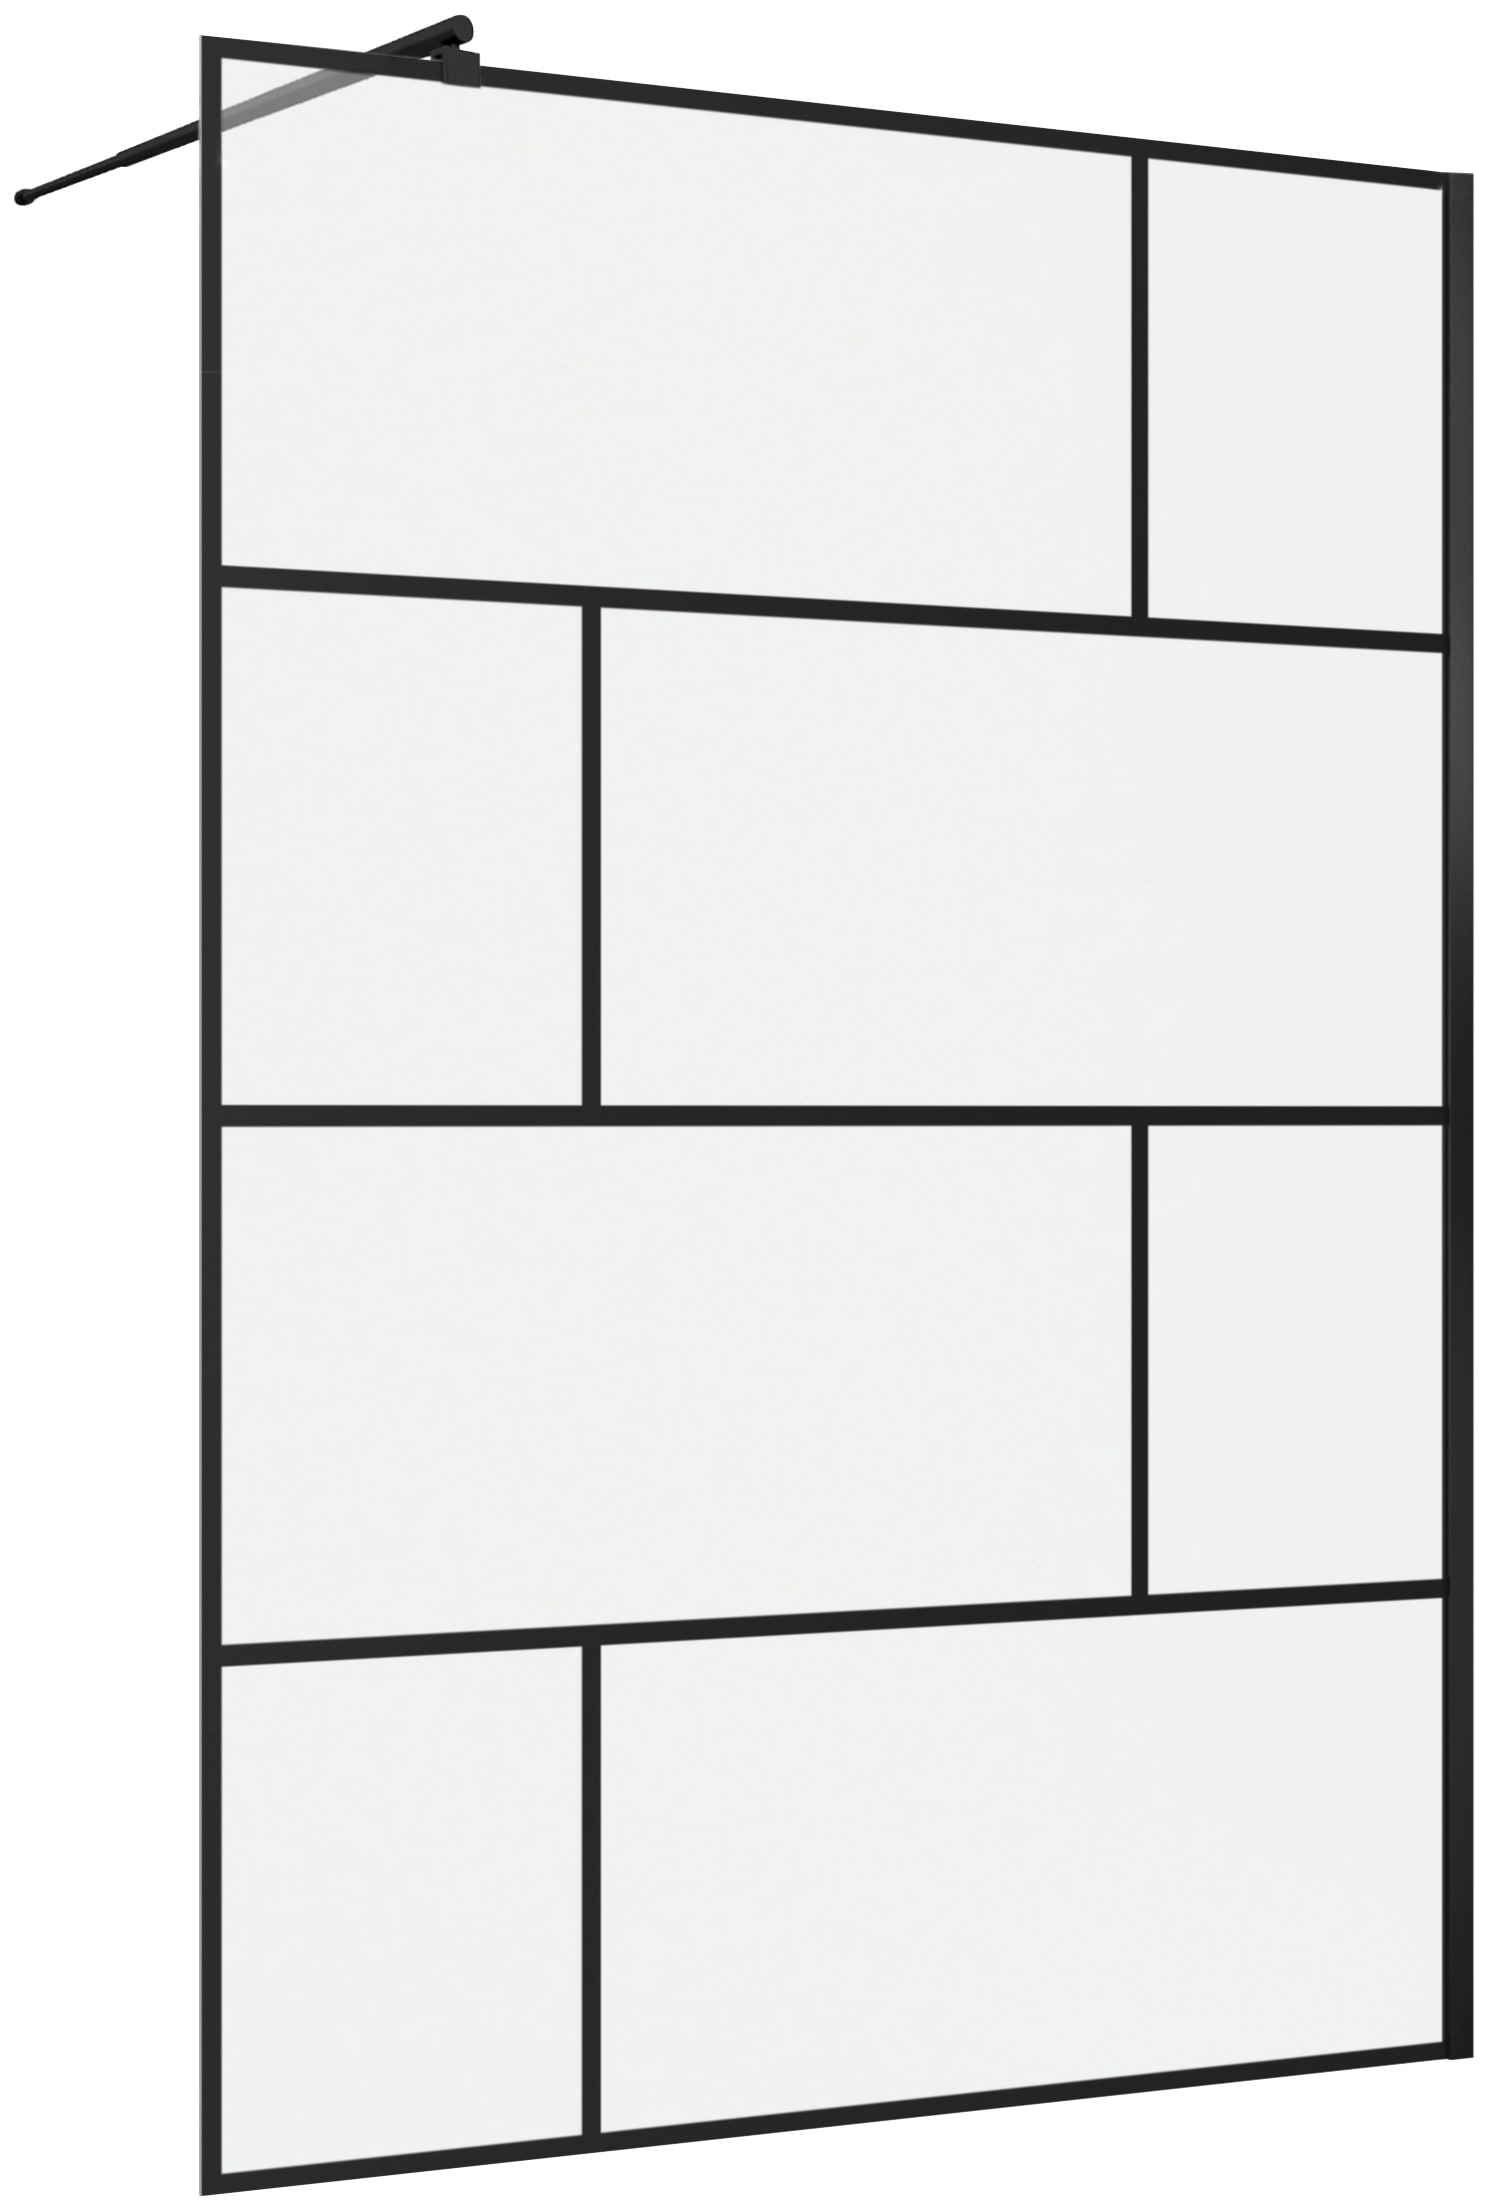 Marwell Walk-in-Dusche "Bricks", 90 x 195 cm, inkl. Haltestange für Wandmontage